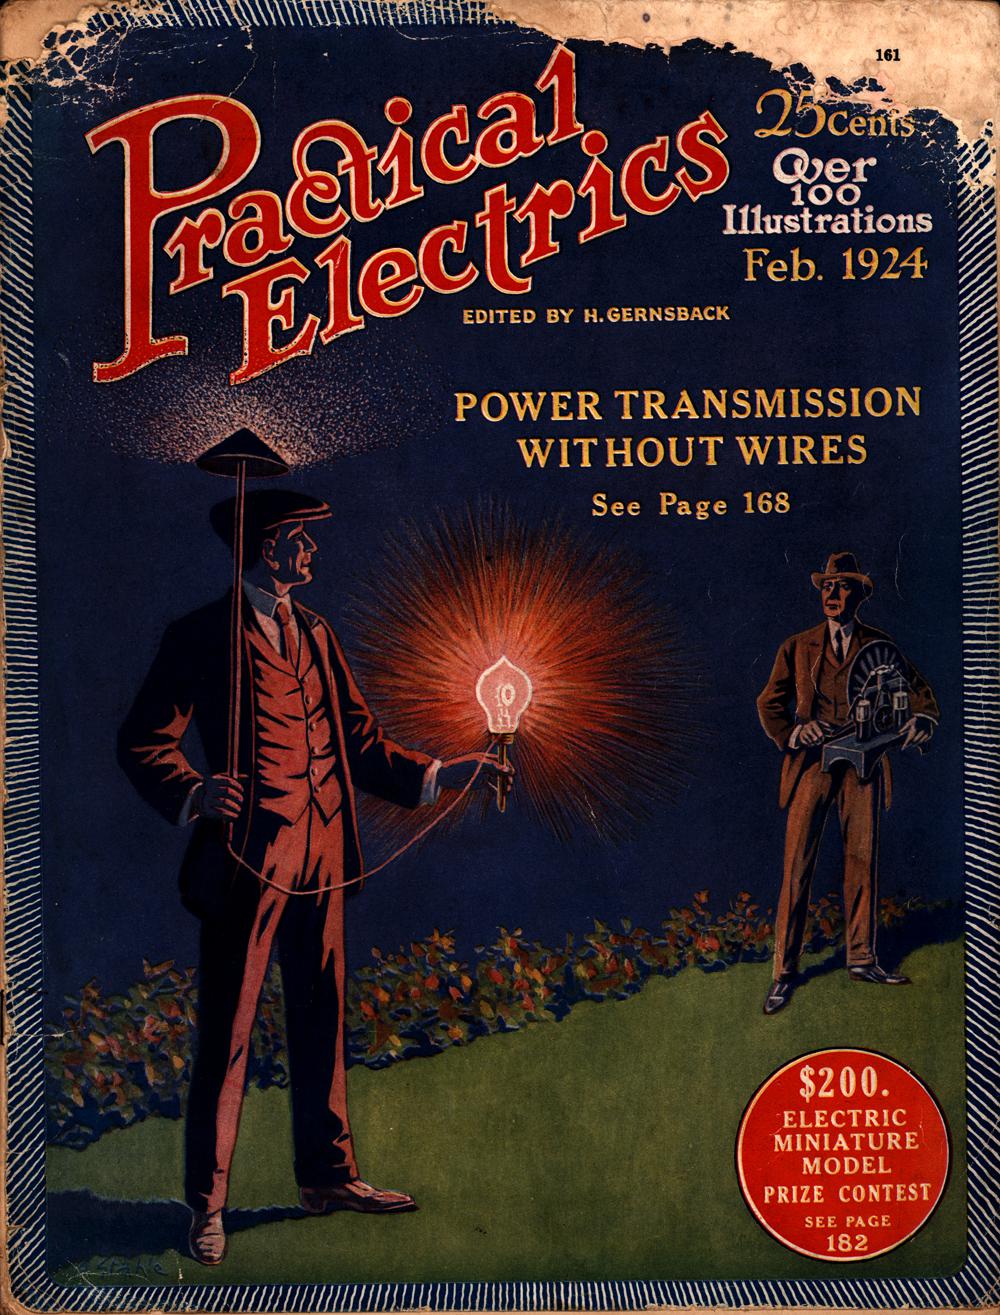 1924 - Practical electrics - Vol. 3, No. 4